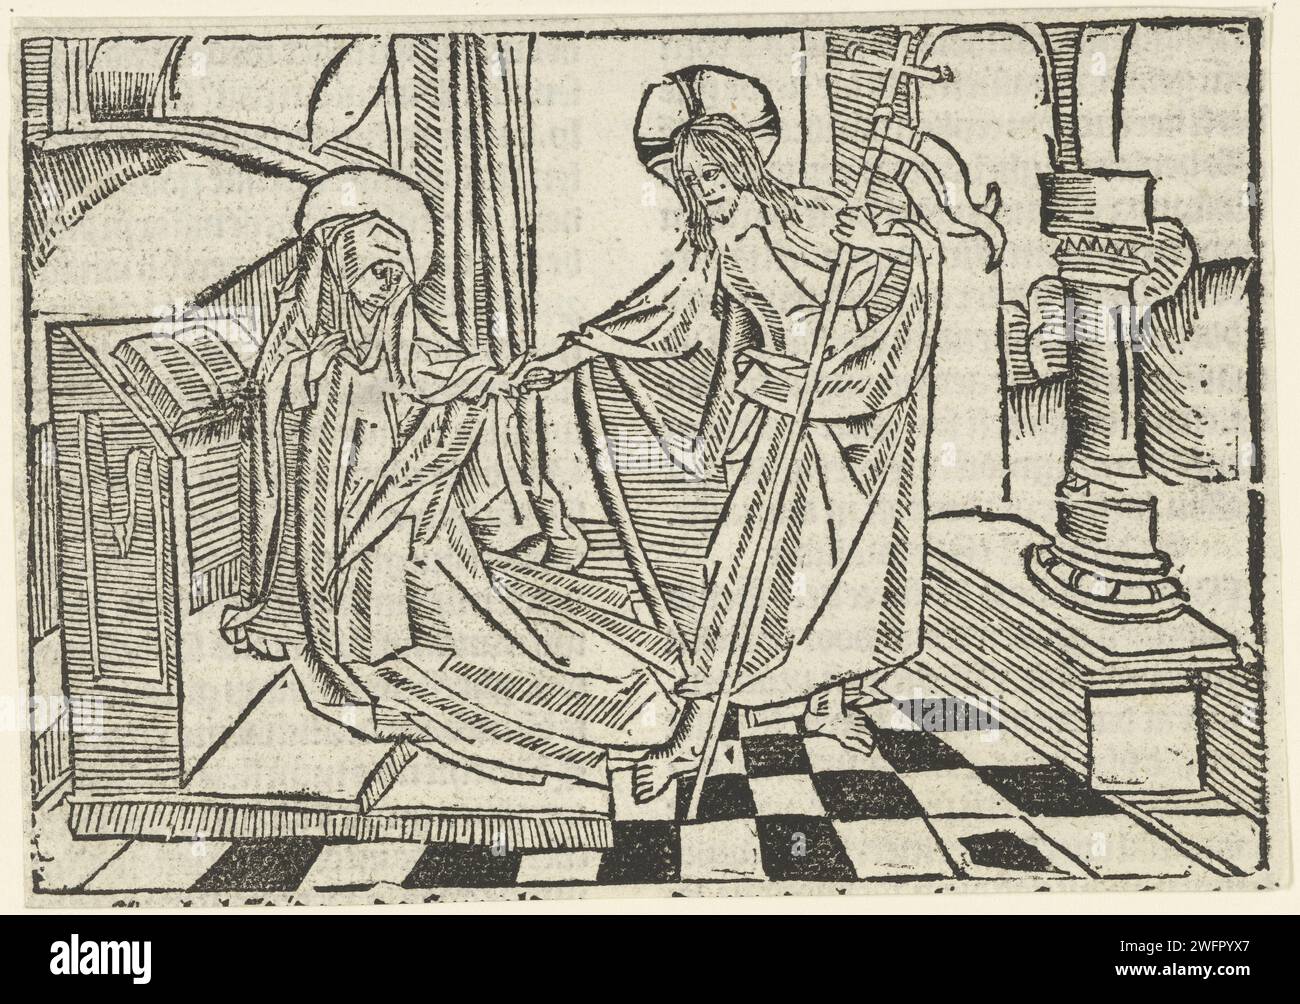 Christus erscheint Maria, Meister von Delft (zugeschrieben), 1503 Druck Kneelded Mary hält Hand Christi mit Stab. Niedere Länder Papier Christus, vielleicht als Pilger gekleidet, erscheint seiner Mutter, die normalerweise betend gezeigt wird Stockfoto